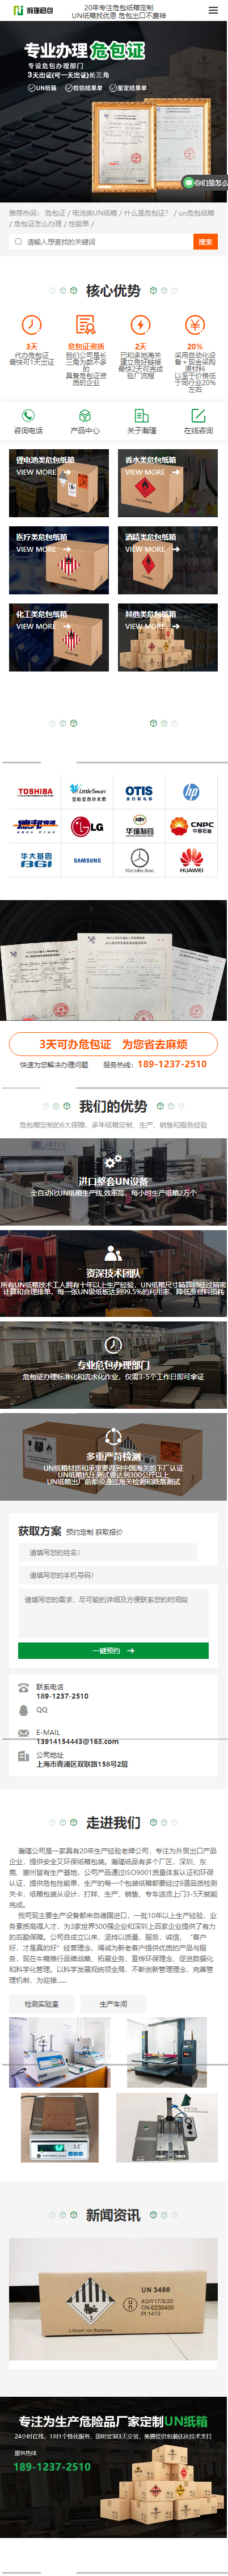 瀚瑾國際貨運代理（上海）營銷型網站制作 手機端預覽圖